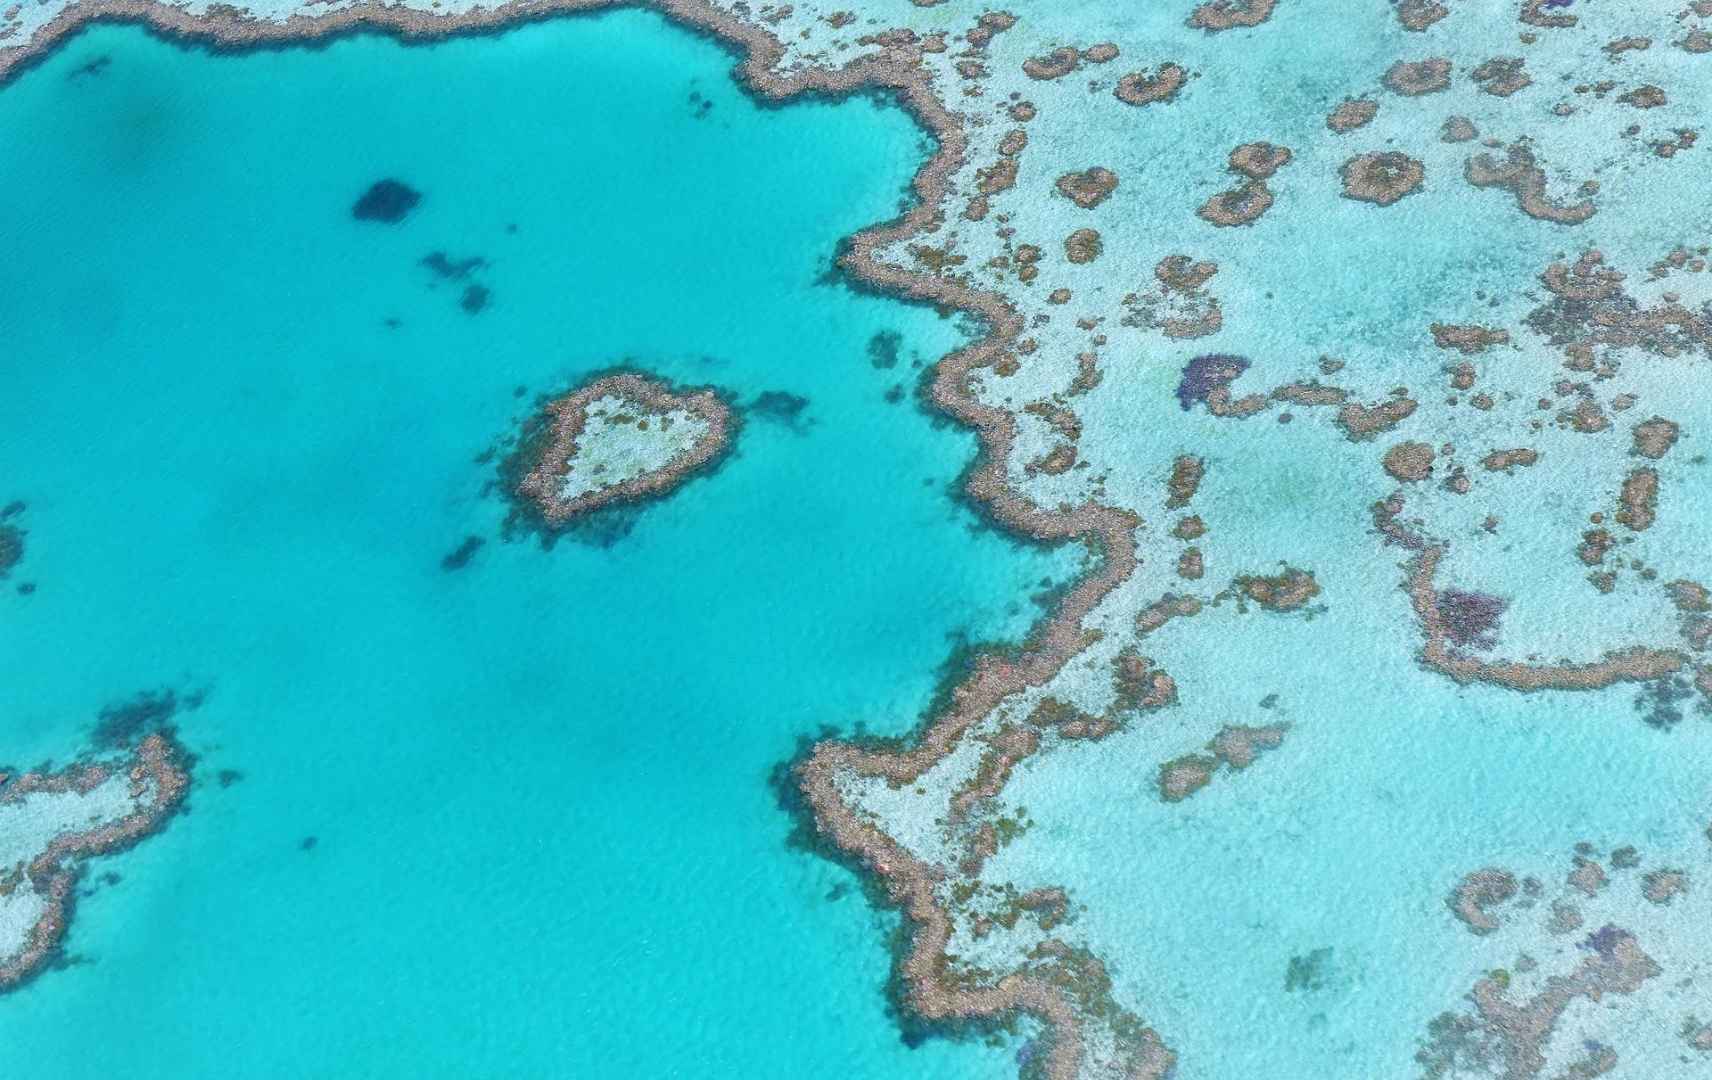 Blick auf das Great Barrier Reef in Australien